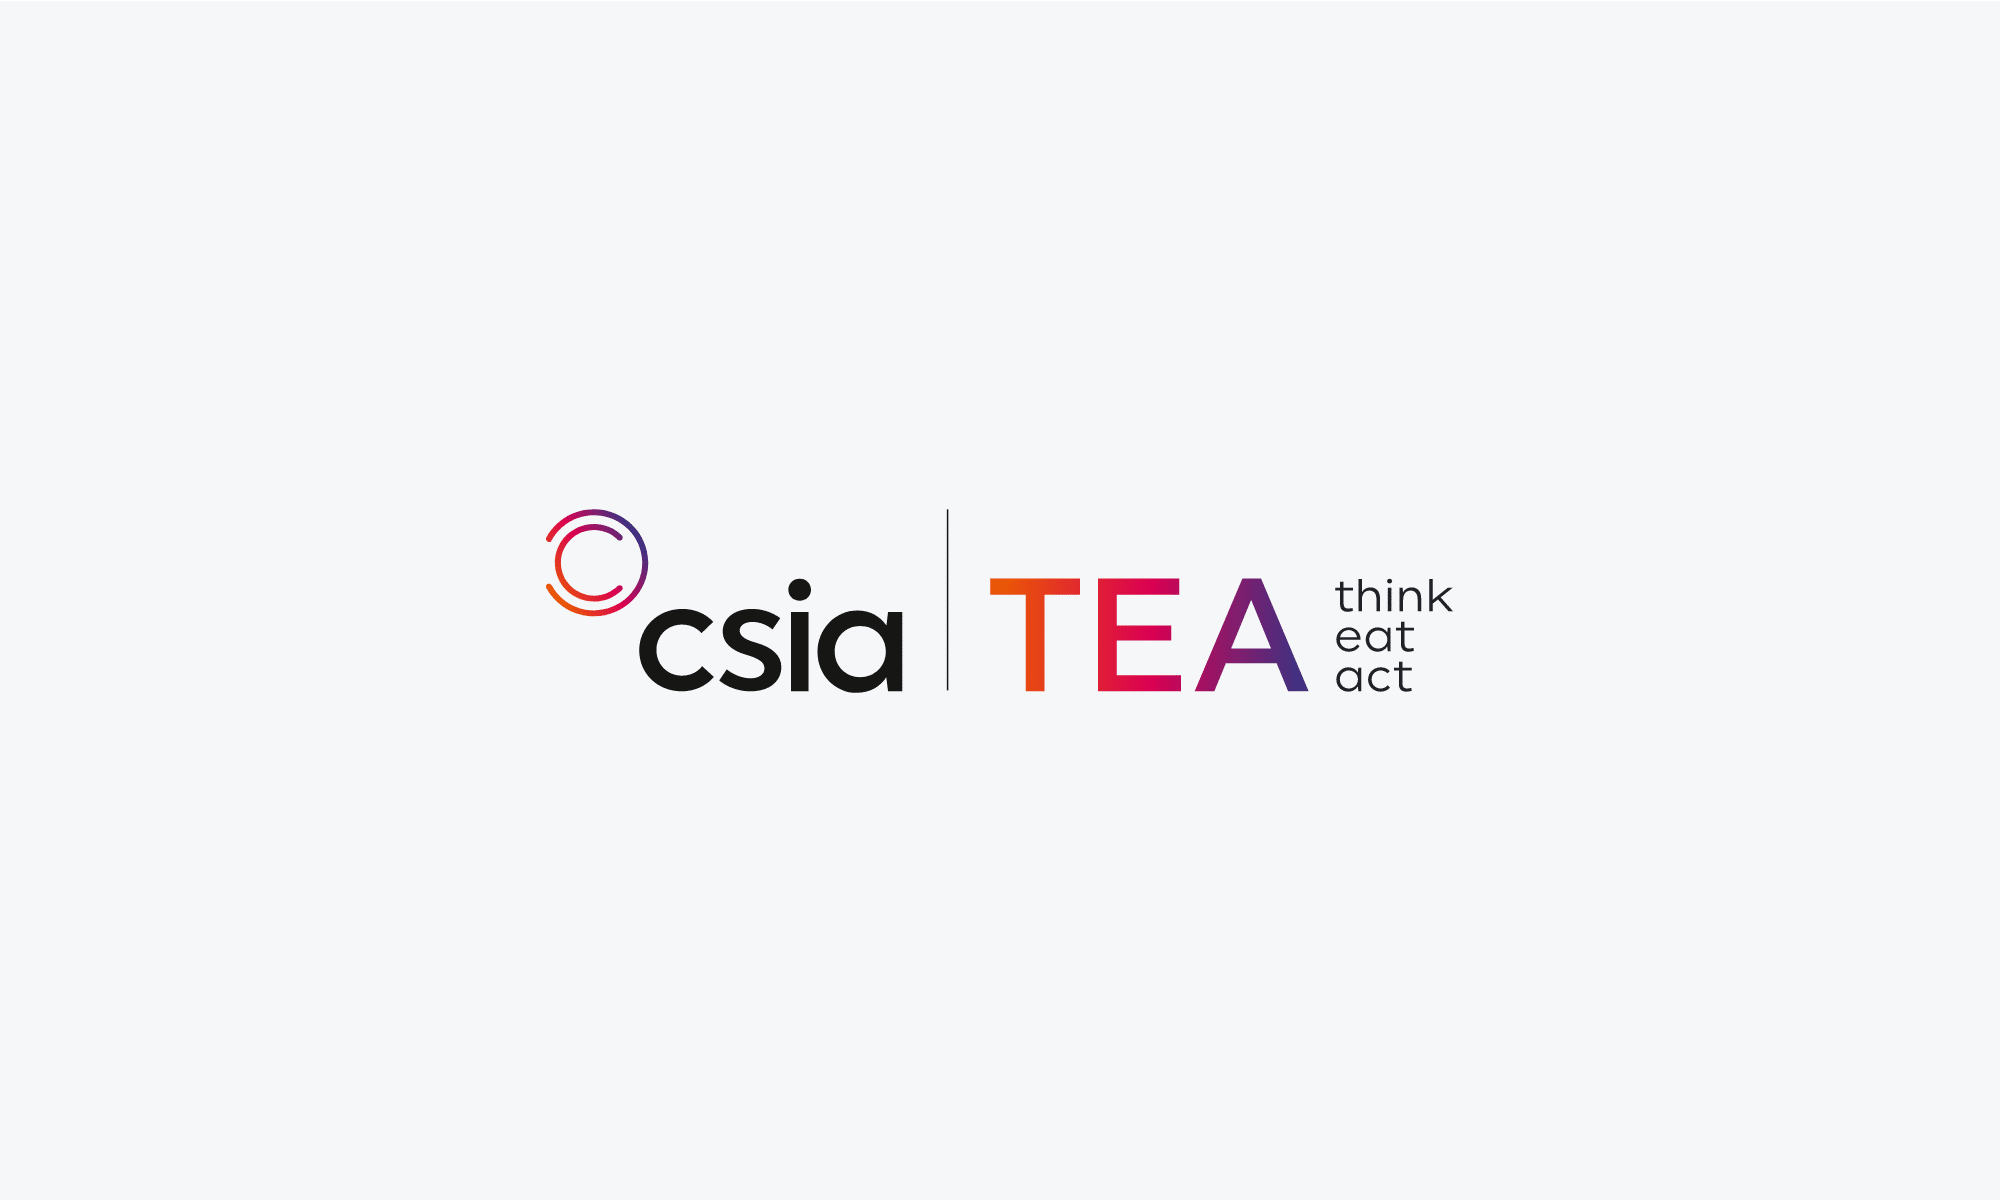 Customer Service Institute of Australia (CSIA) TEA Branding